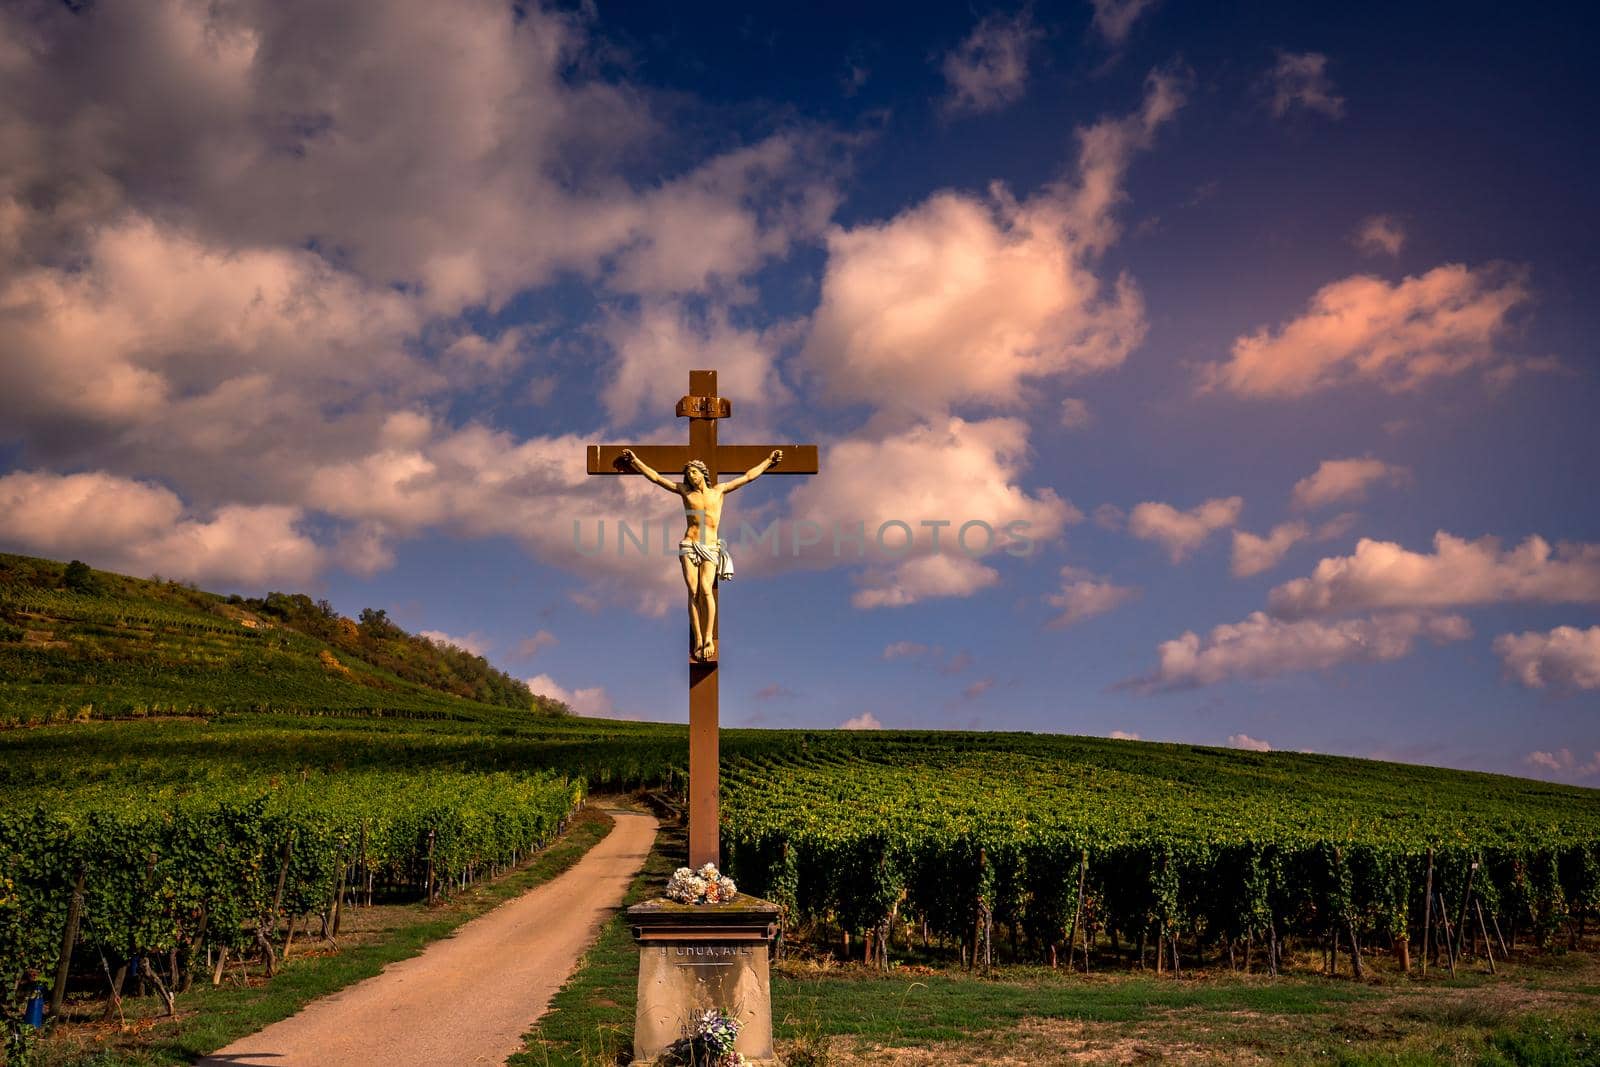 Vineyards on the wine road, Kaysersberg, Alsace, France